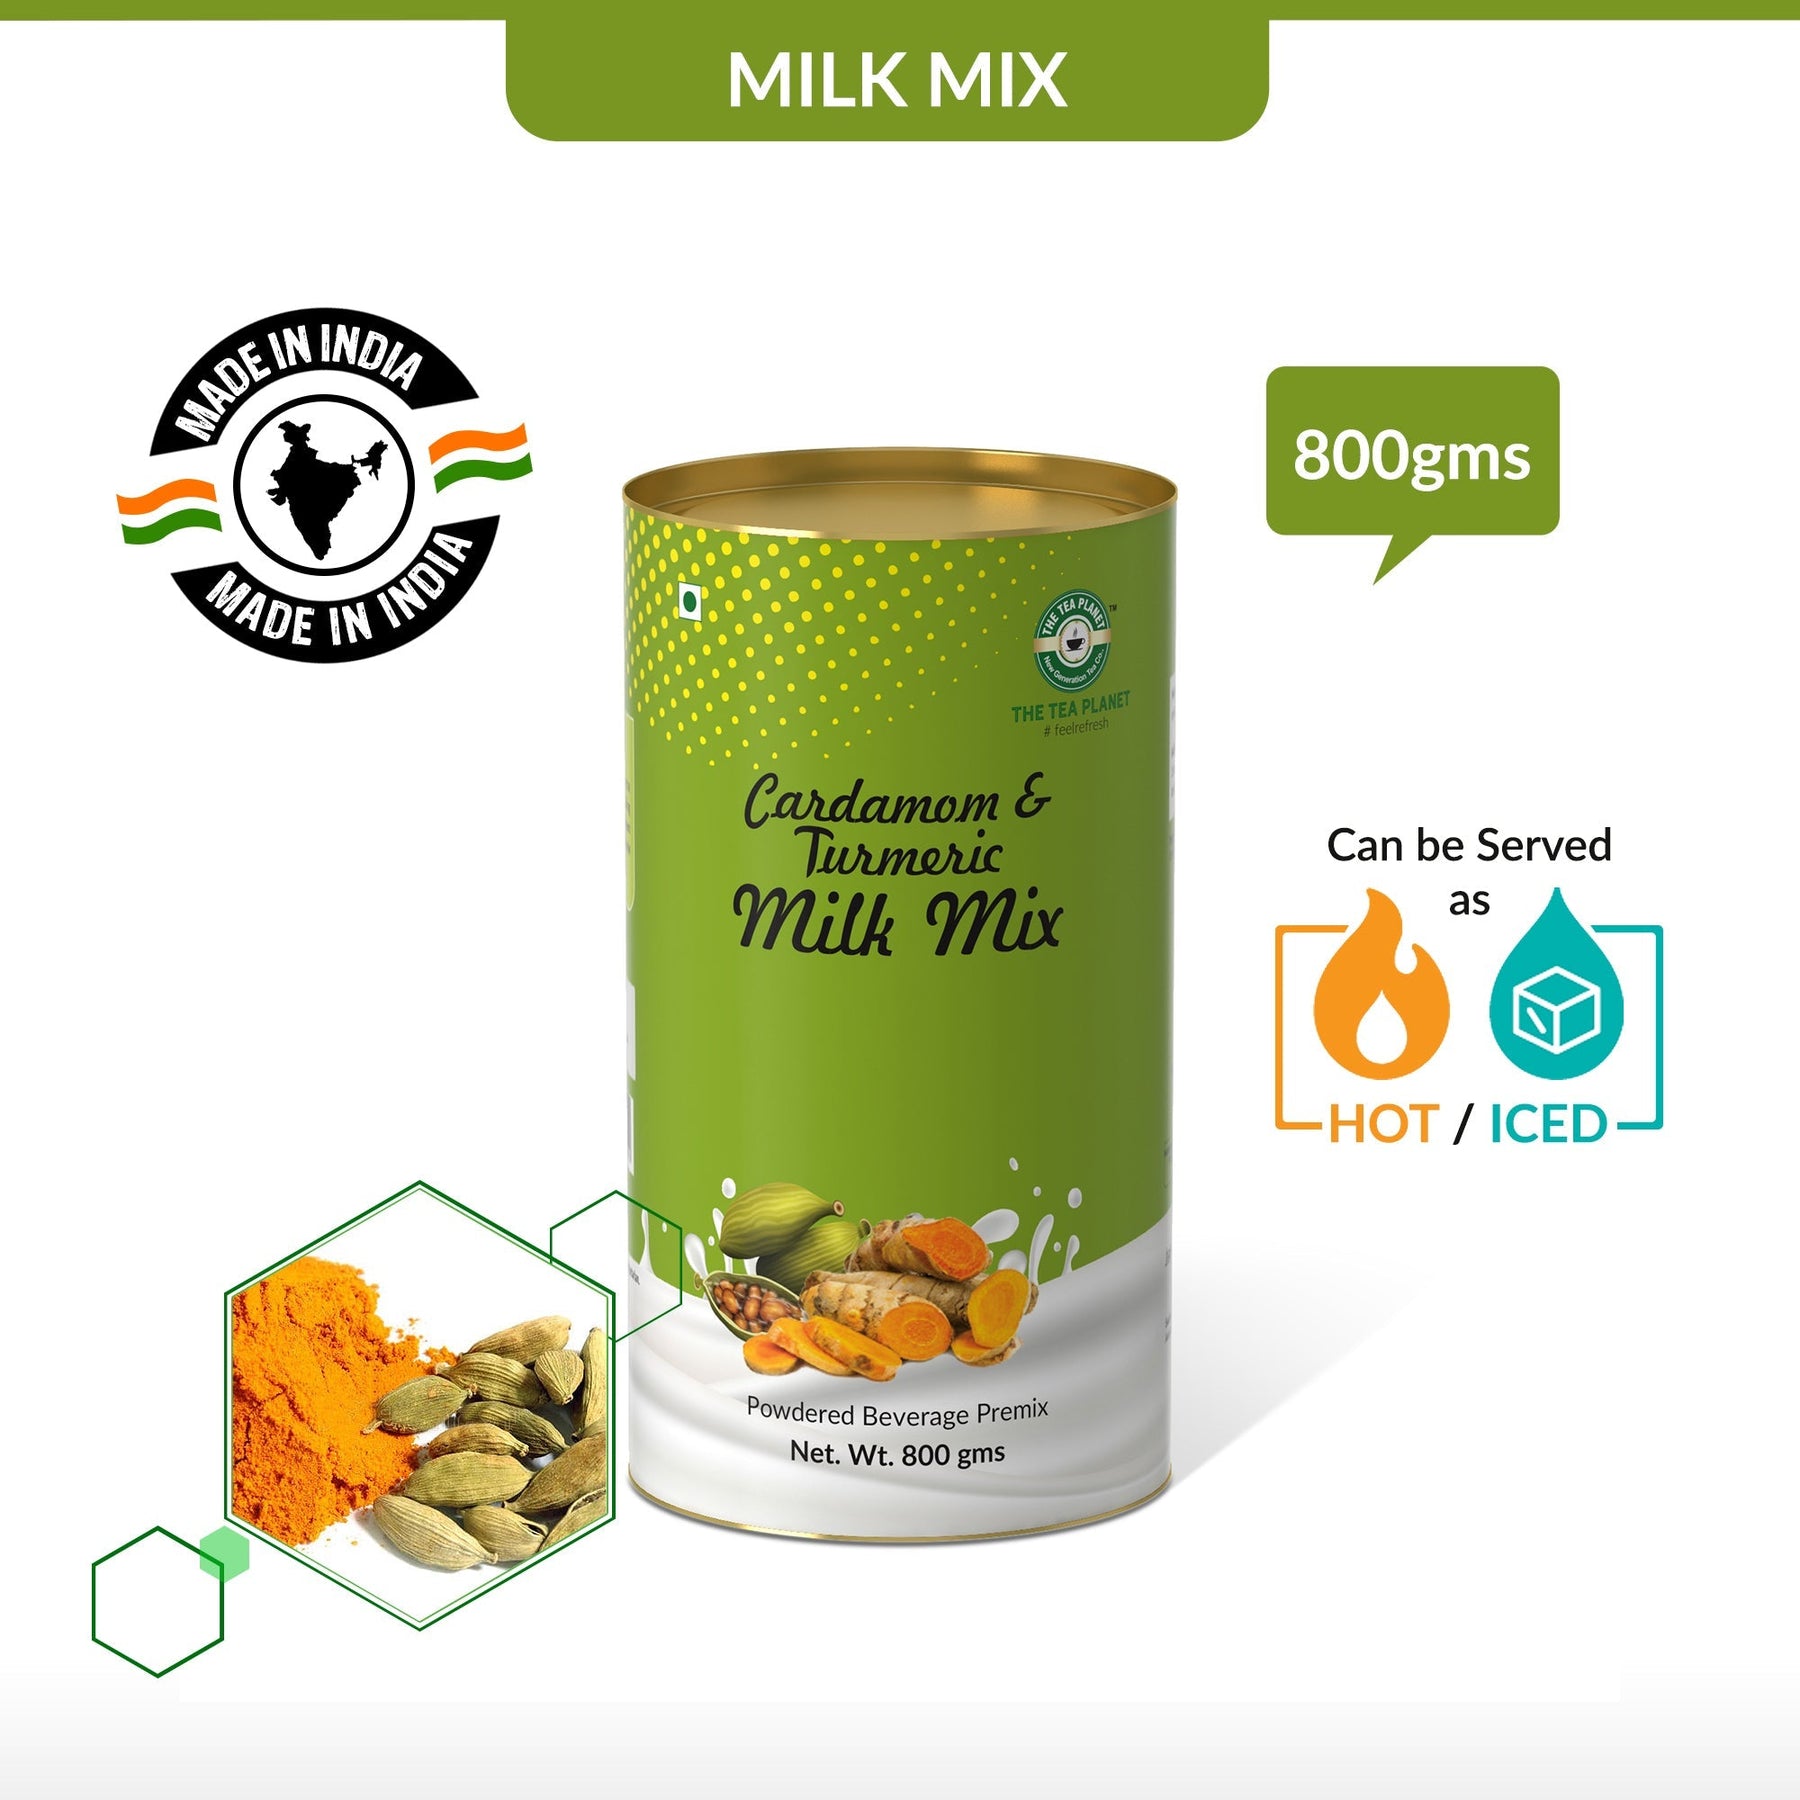 Cardamom & Turmeric Flavor Milk Mix - 800 gms